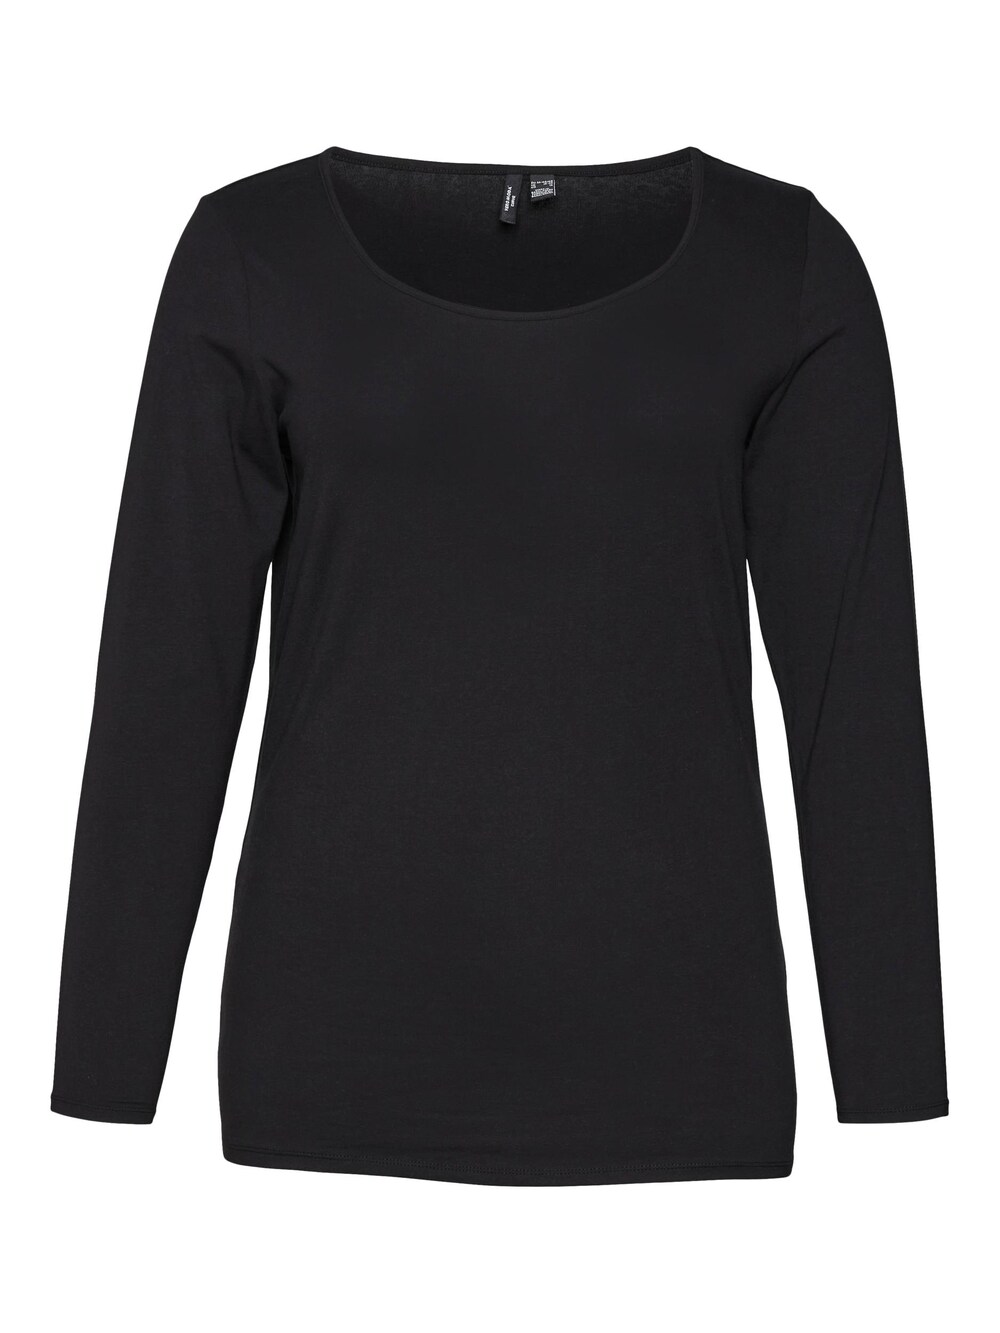 vero moda джемпер толстовка женский цвет черный размер xs Рубашка Vero Moda Curve Paxi, черный